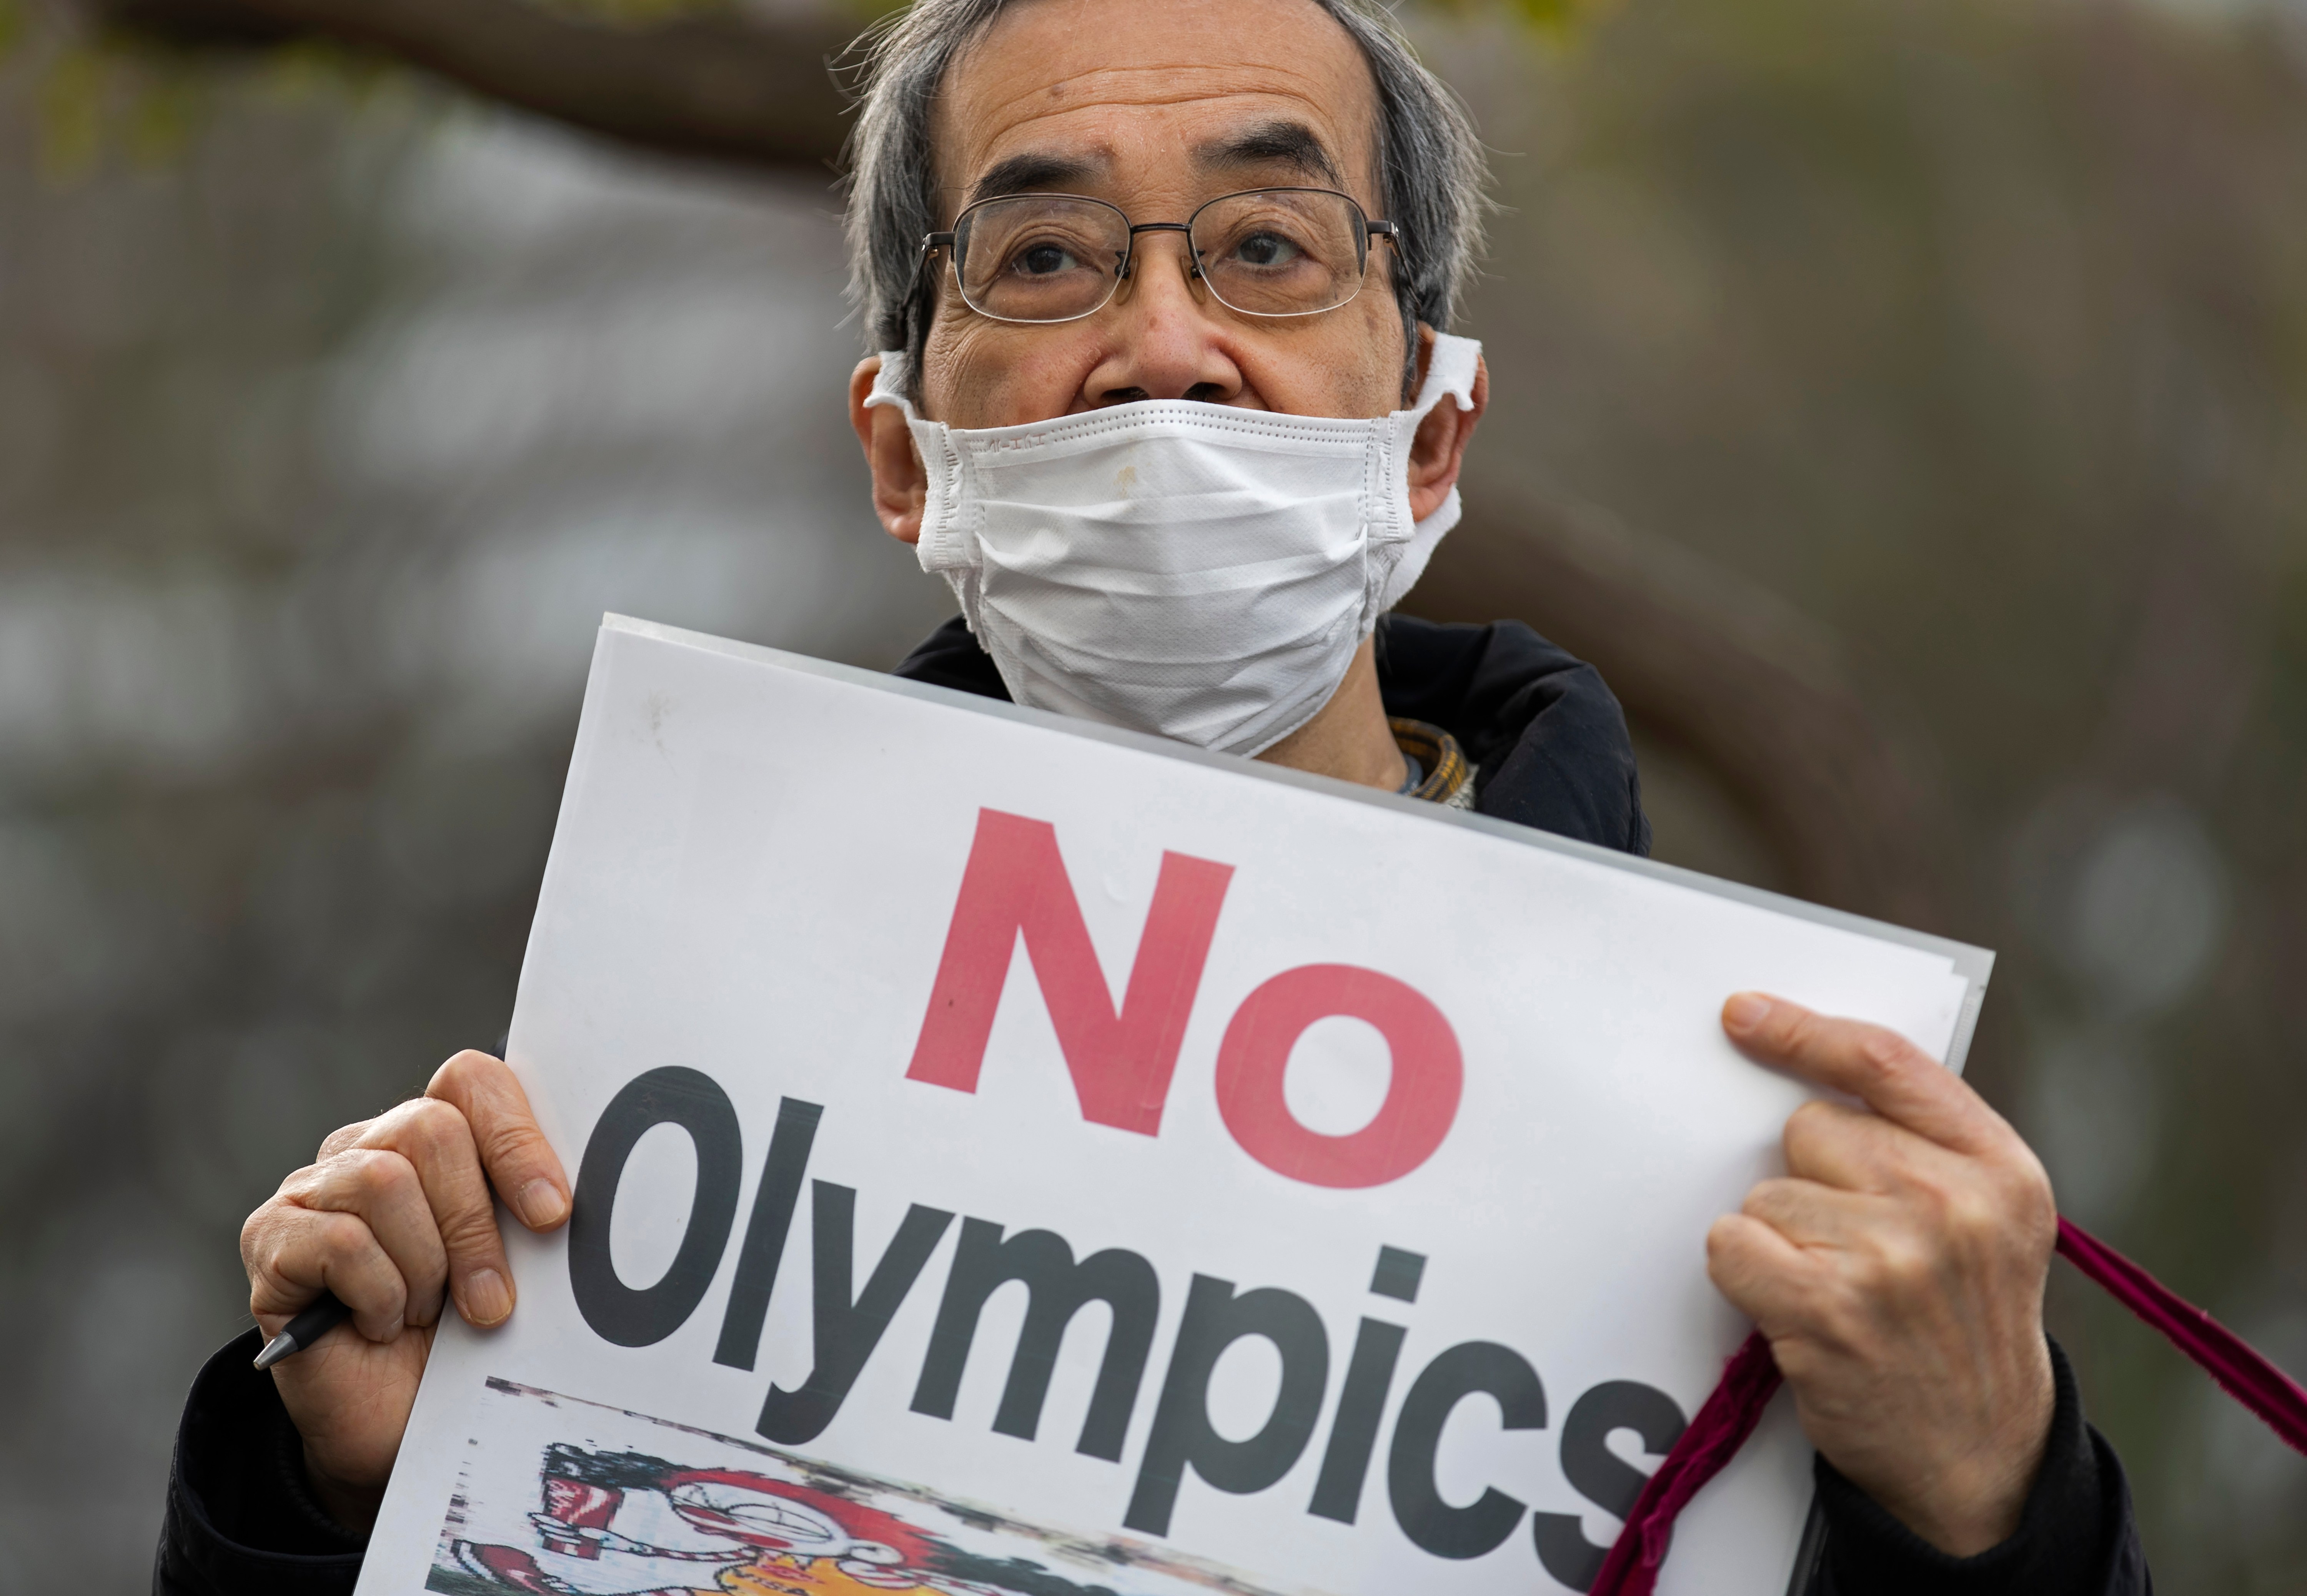 Более 70% жителей Японии из-за пандемии выступают за отмену или перенос Олимпийских игр. За полную отмену Игр выступили 39,2% респондентов, за перенос&nbsp;&mdash; 32,8%. В то&nbsp;же время за проведение Игр в назначенные сроки выступили 24,5%.

На 13 апреля в Японии зафиксировано более 510&nbsp;тыс. случаев заражения COVID-19, более 127&nbsp;тыс. из которых в Токио.&nbsp;Среднее количество ежедневных&nbsp;новых случаев заражения в столице за неделю подскочило с 417 до 497,1.&nbsp;Правительство на этом фоне объявило&nbsp;о выступлении Японии&nbsp;в четвертую волну пандемии.

